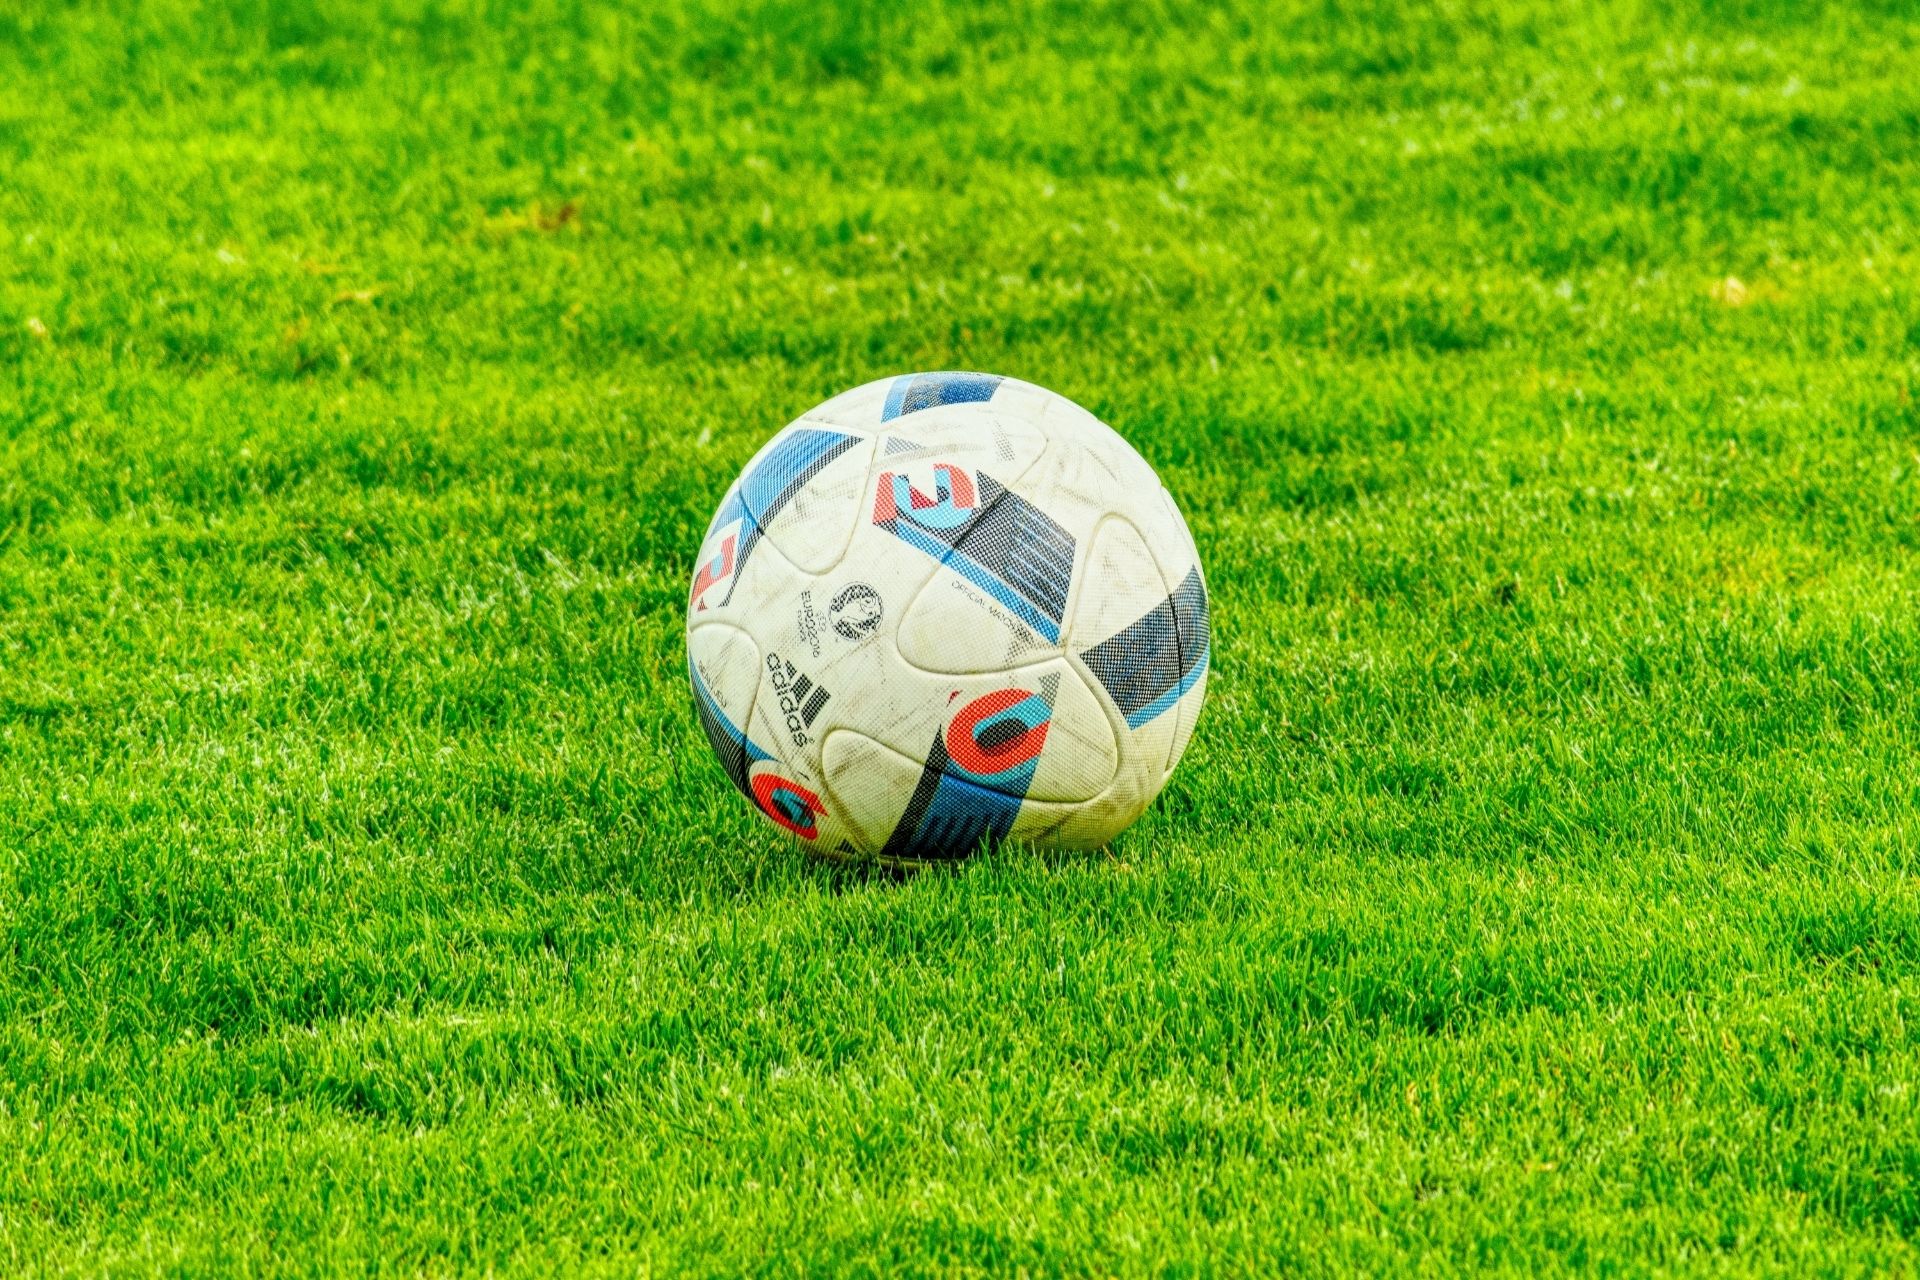 Dnia 2022-10-09 13:30 miało miejsce spotkanie Borussia Monchengladbach - FC Koln zakończone wynikiem 5-2